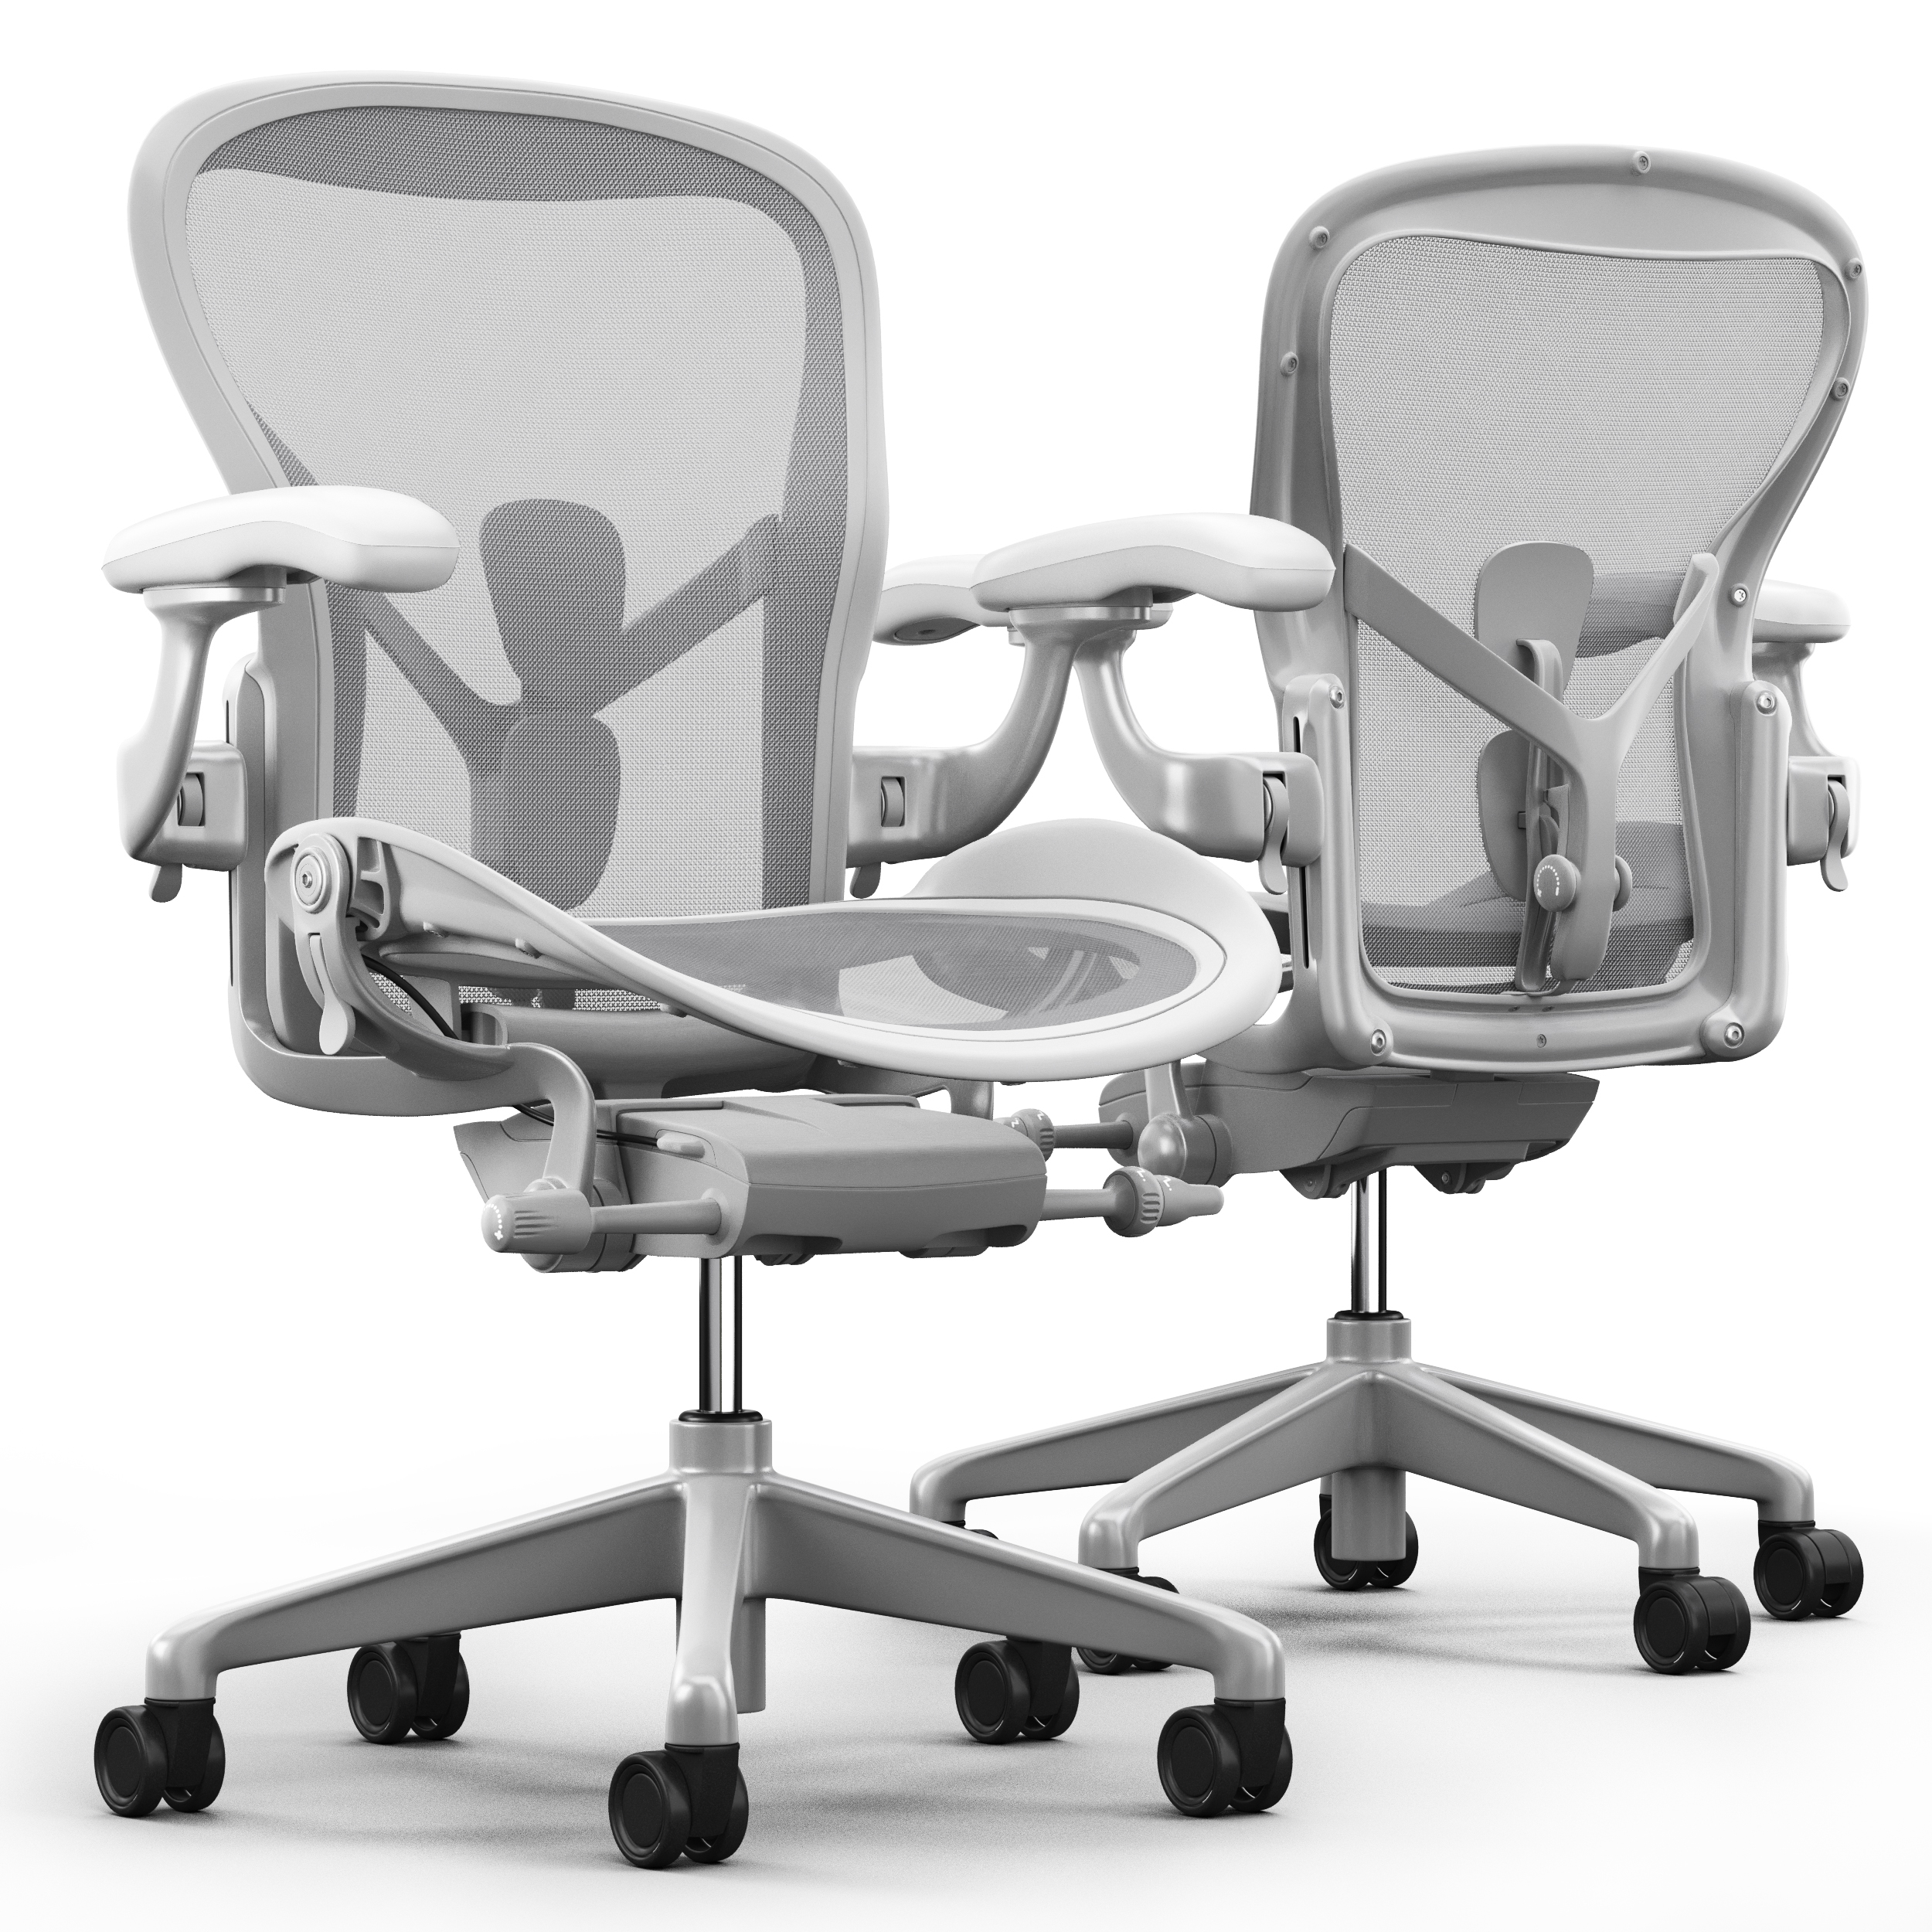 3d Chair Herman Miller Model Turbosquid 1340851